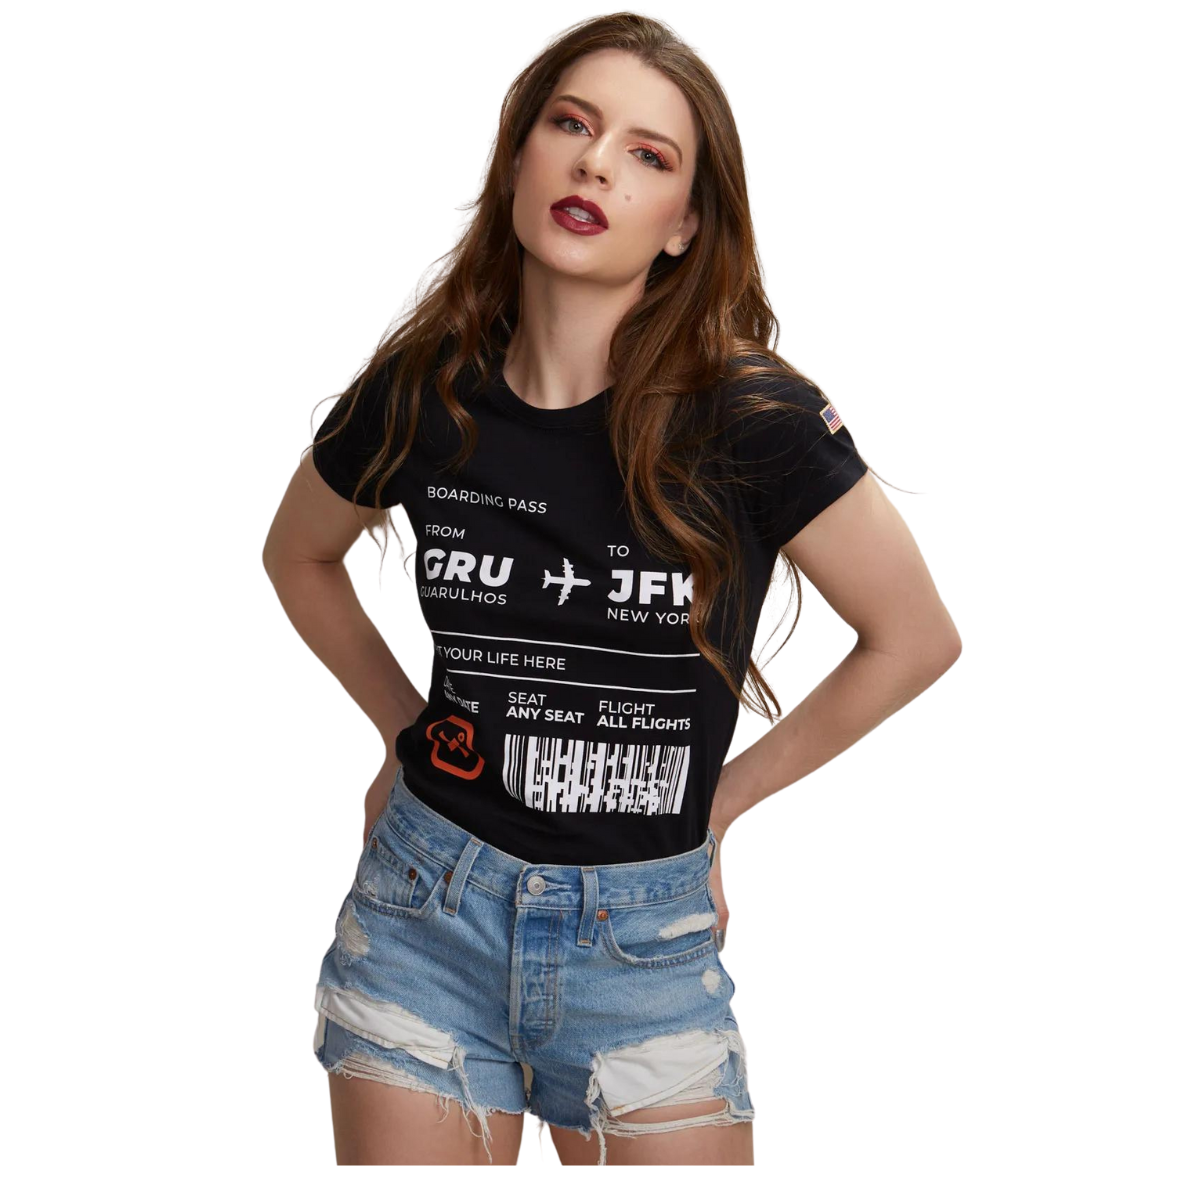 Camiseta Feminina TXC Preto - Ref. 50165